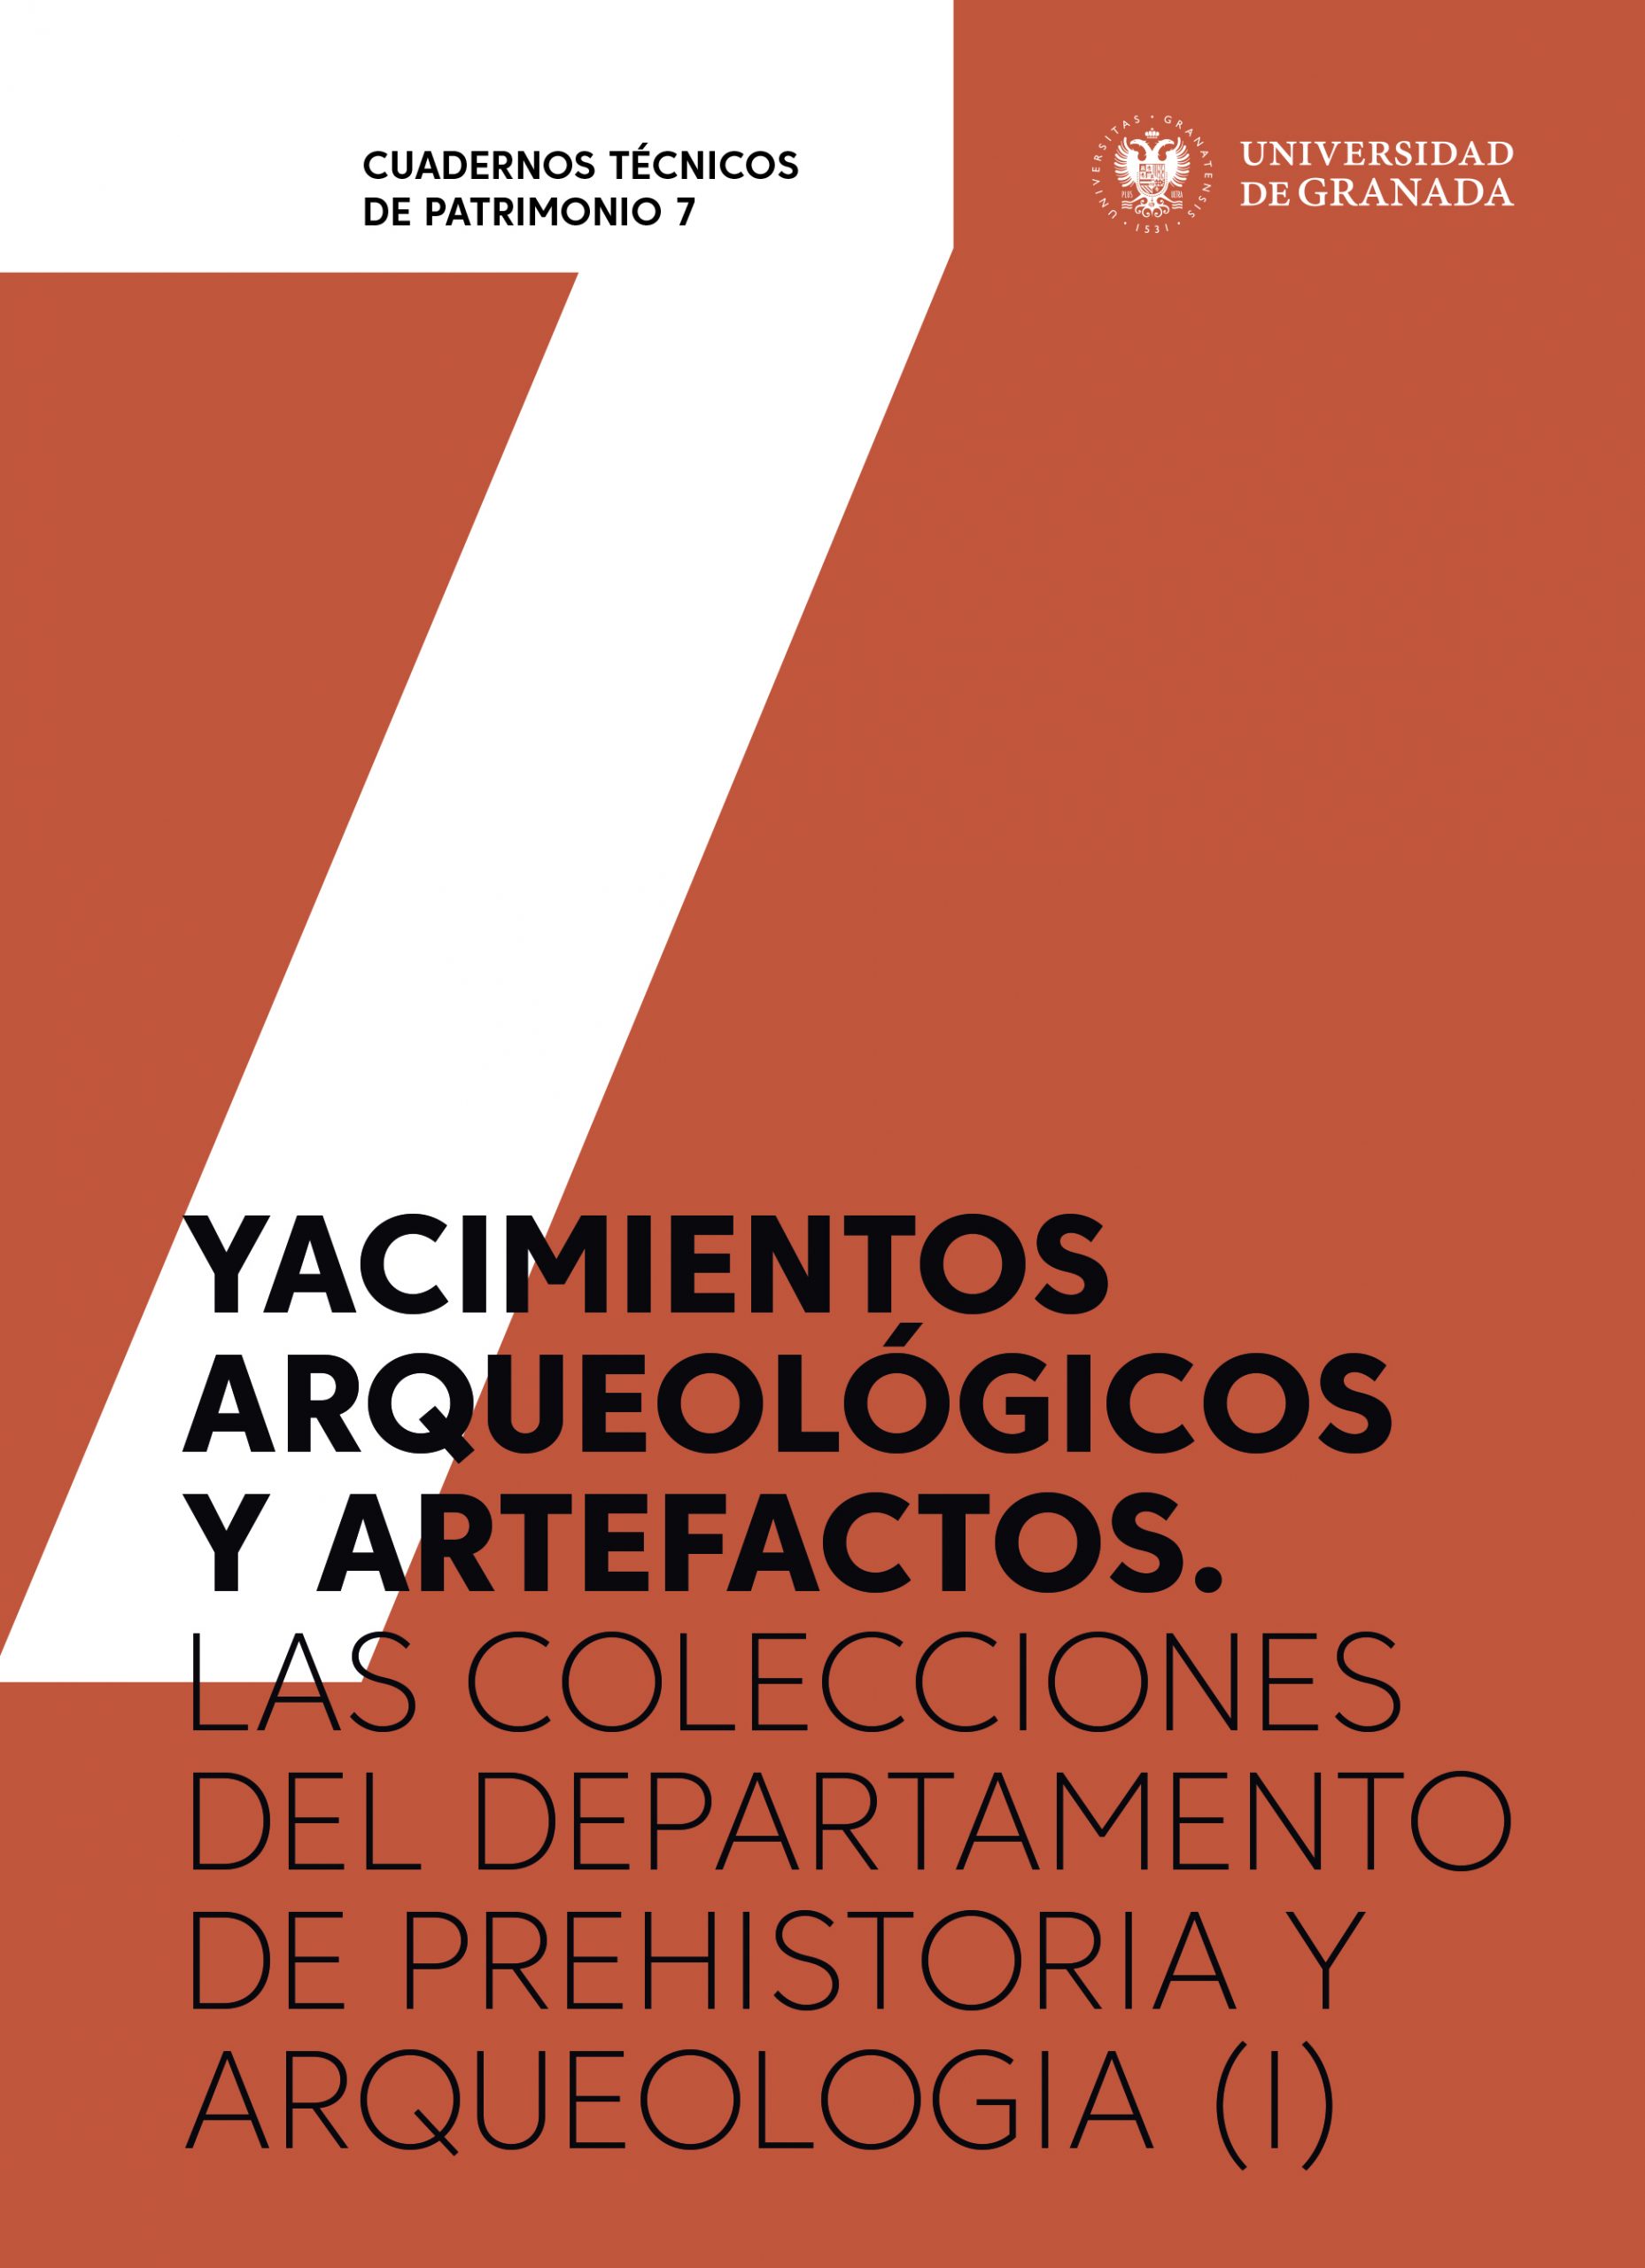 Imagen de portada del libro Yacimientos arqueológicos y artefactos